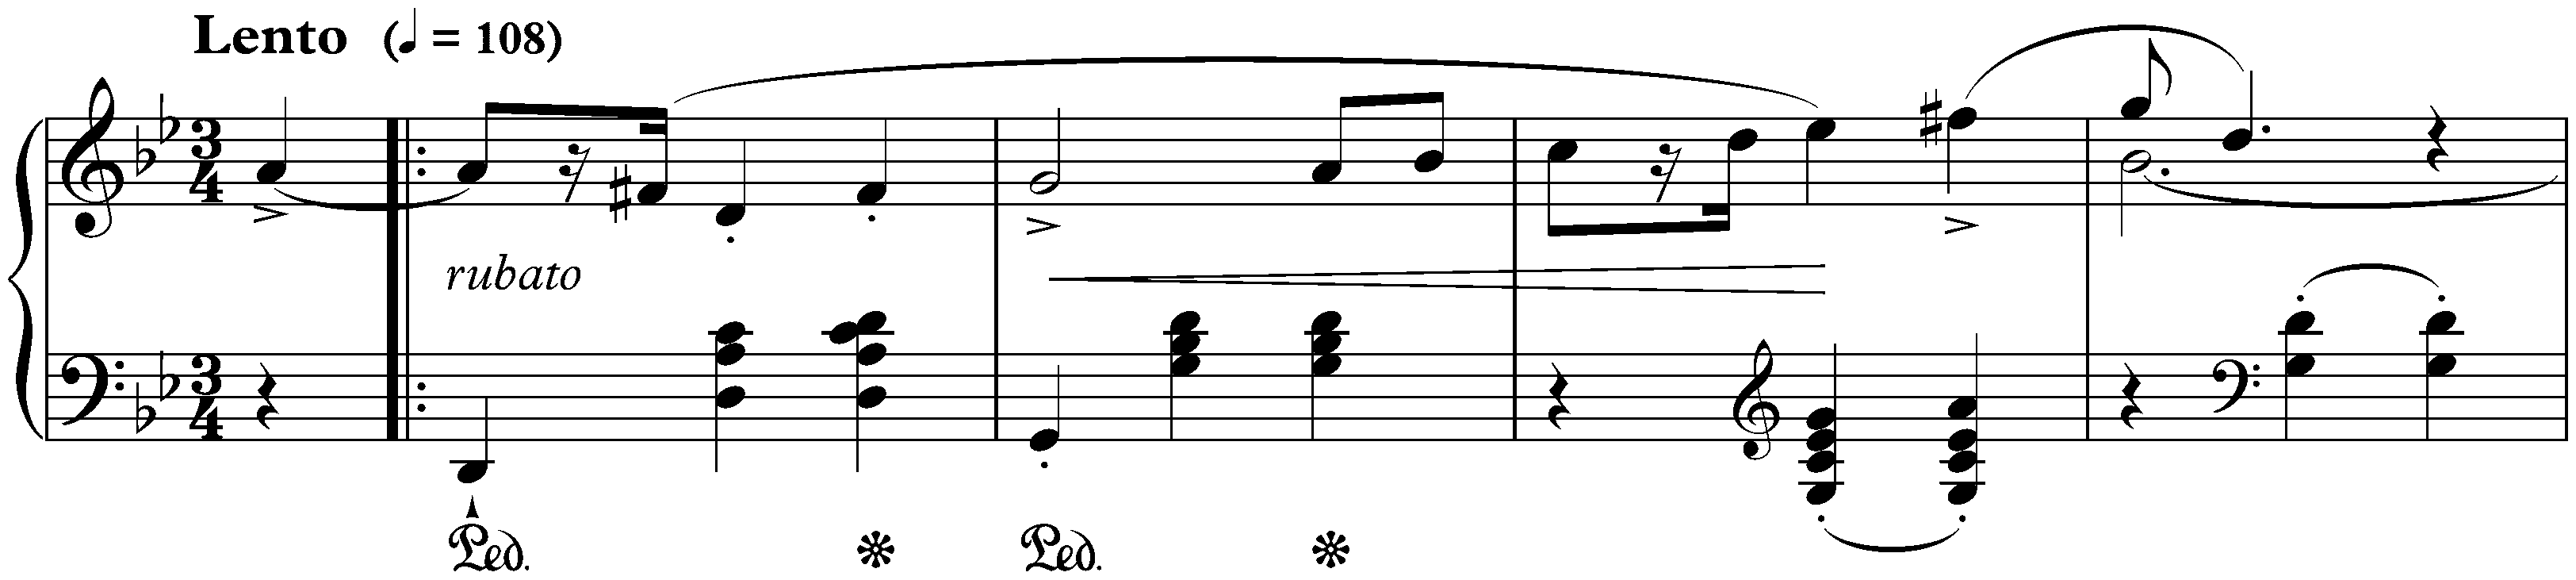 Four Mazurkas, op. 24; 1. G minor